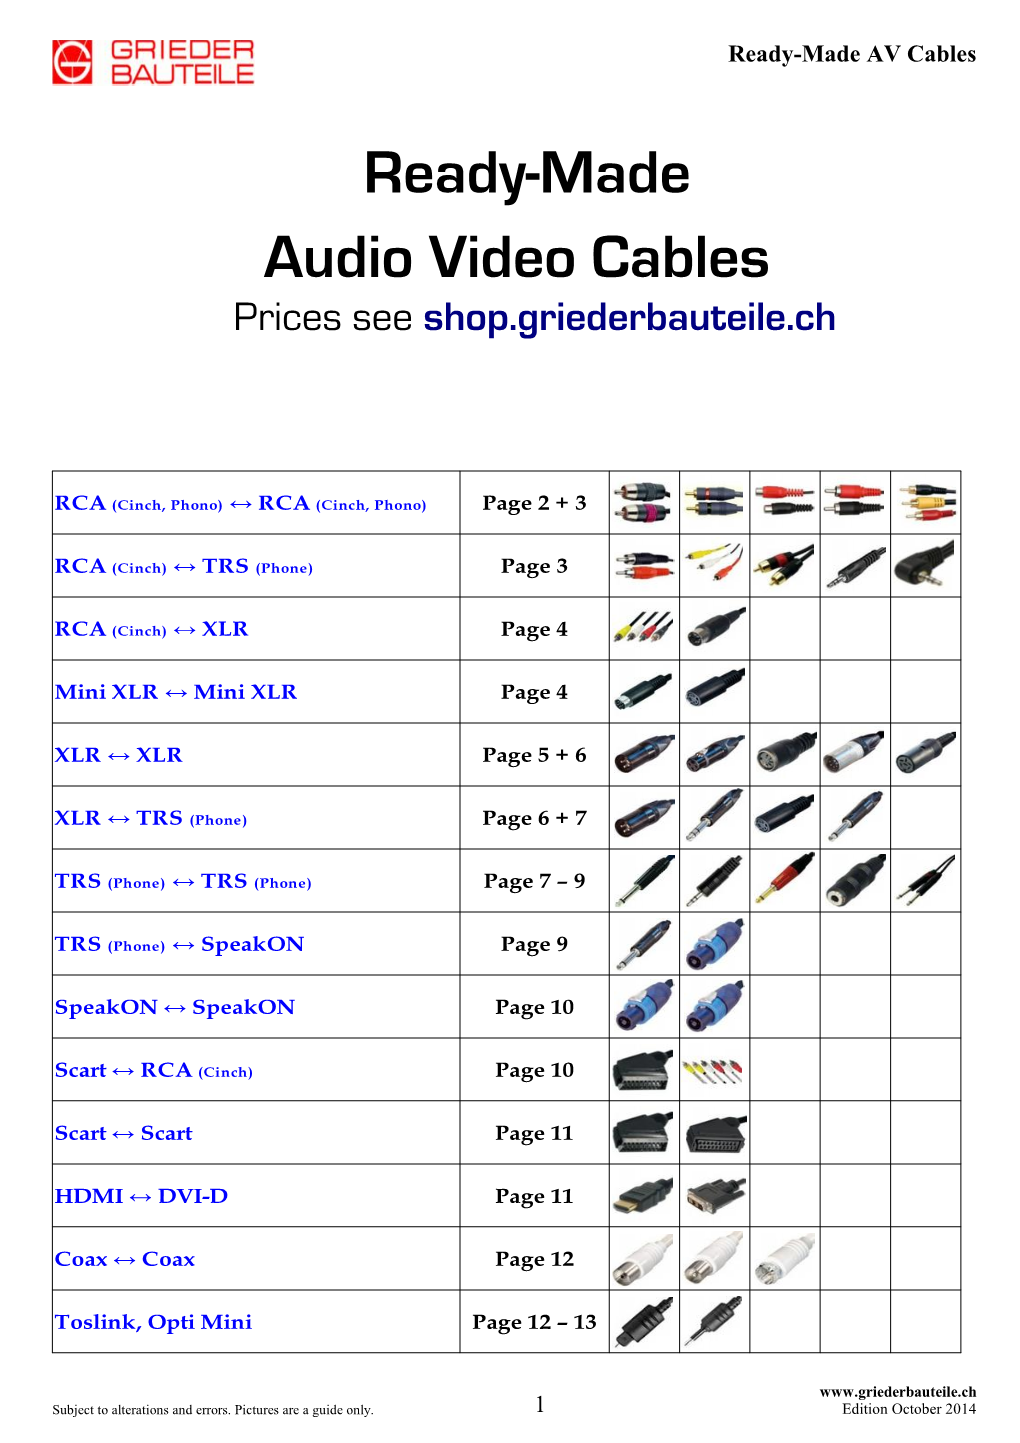 Ready-Made AV Cables